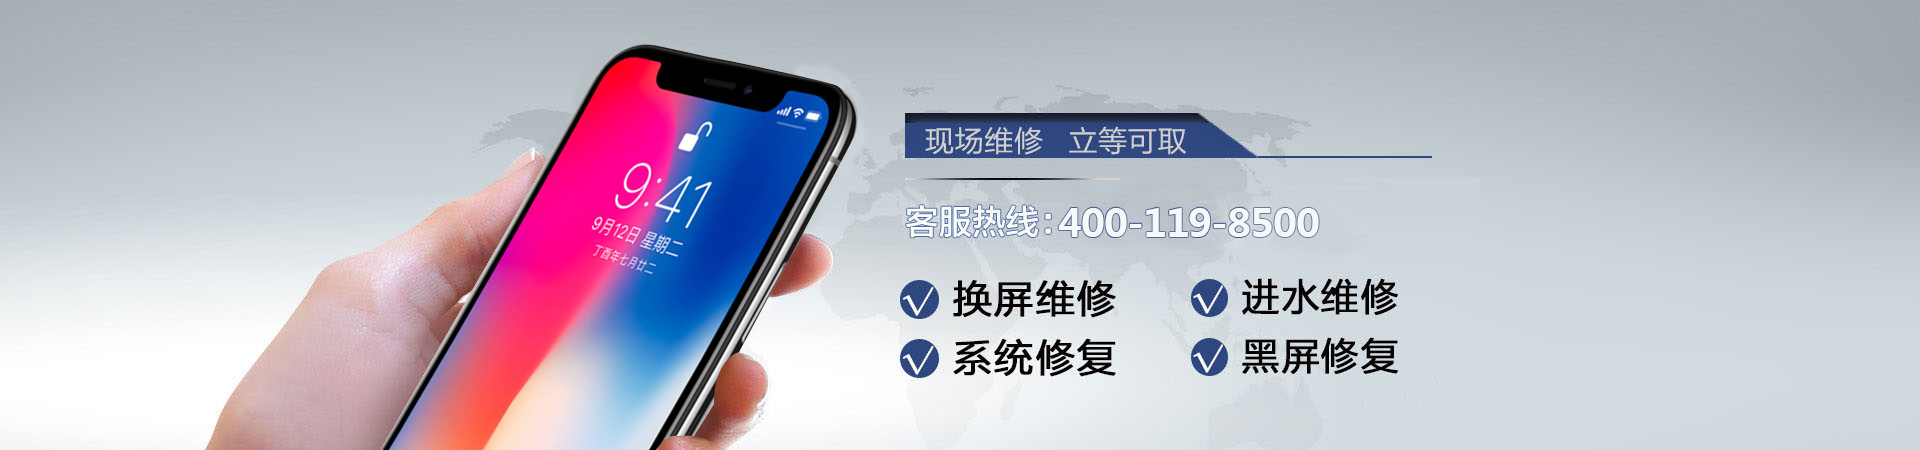 重庆苹果手机维修服务地址查询